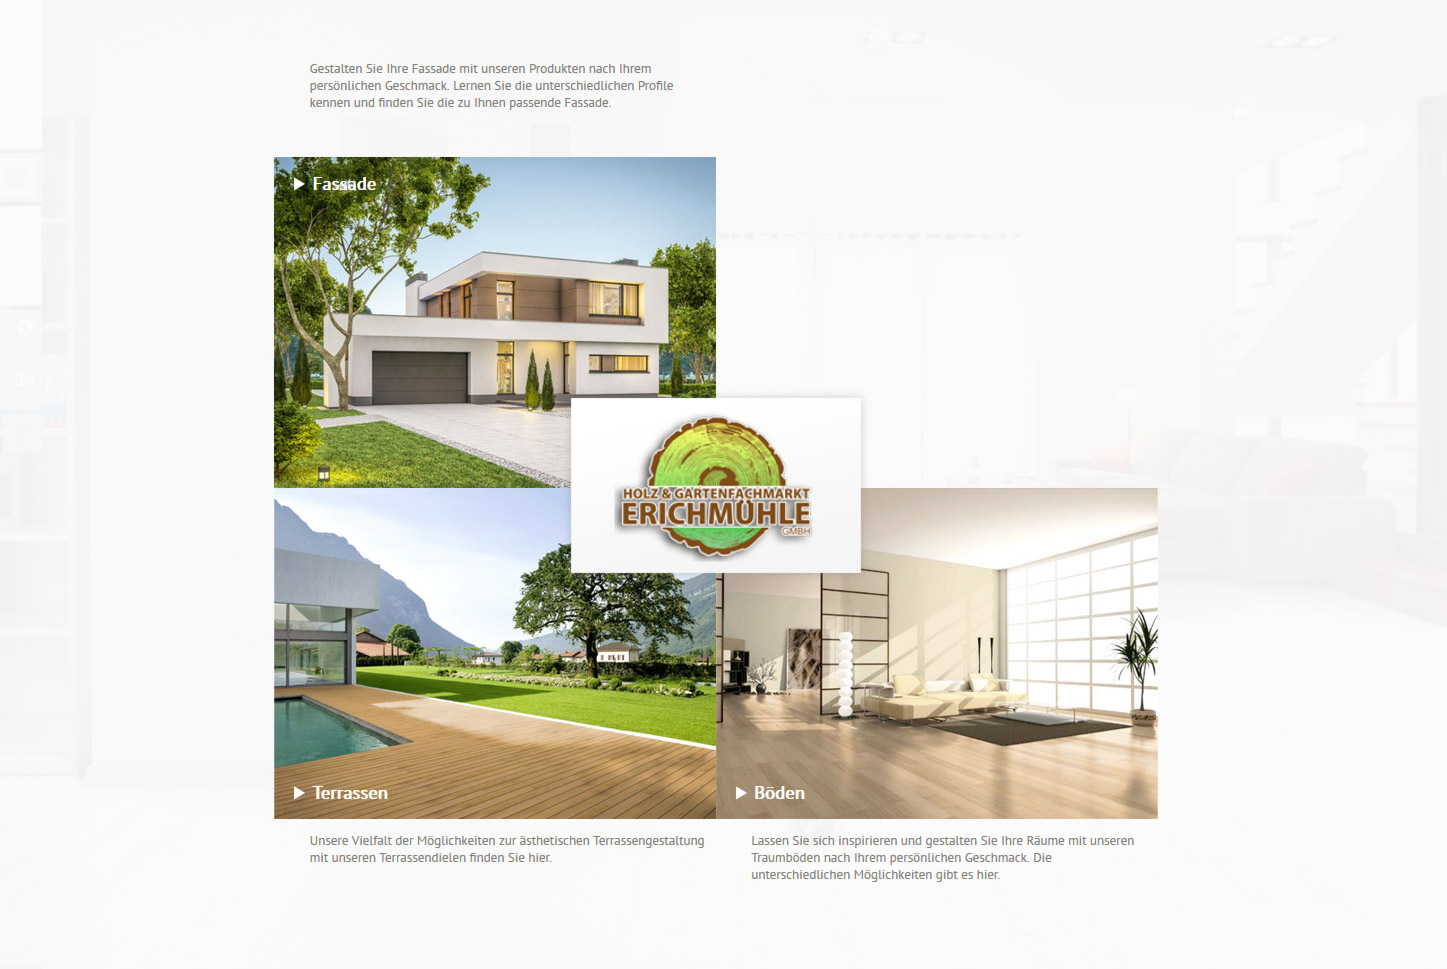 Das Erichmühle-designStudio für Fassaden, Boden und Terrassendielen  für die Region Nürnberg, Franken, Erlangen